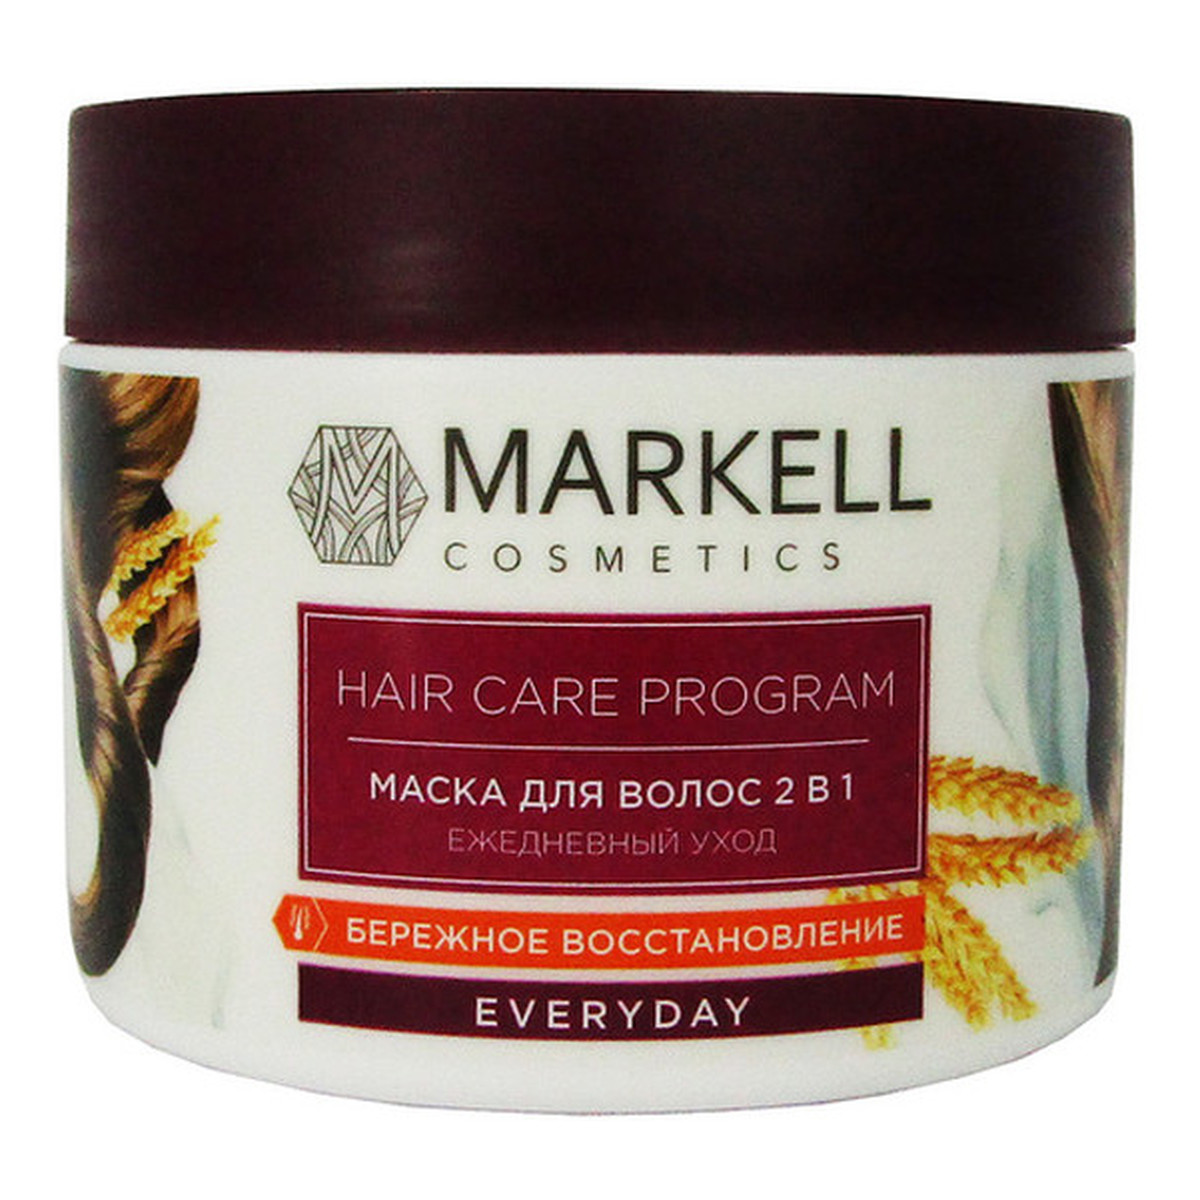 Markell Cosmetics Everyday odżywiająca Maska do włosów 2w1 290g